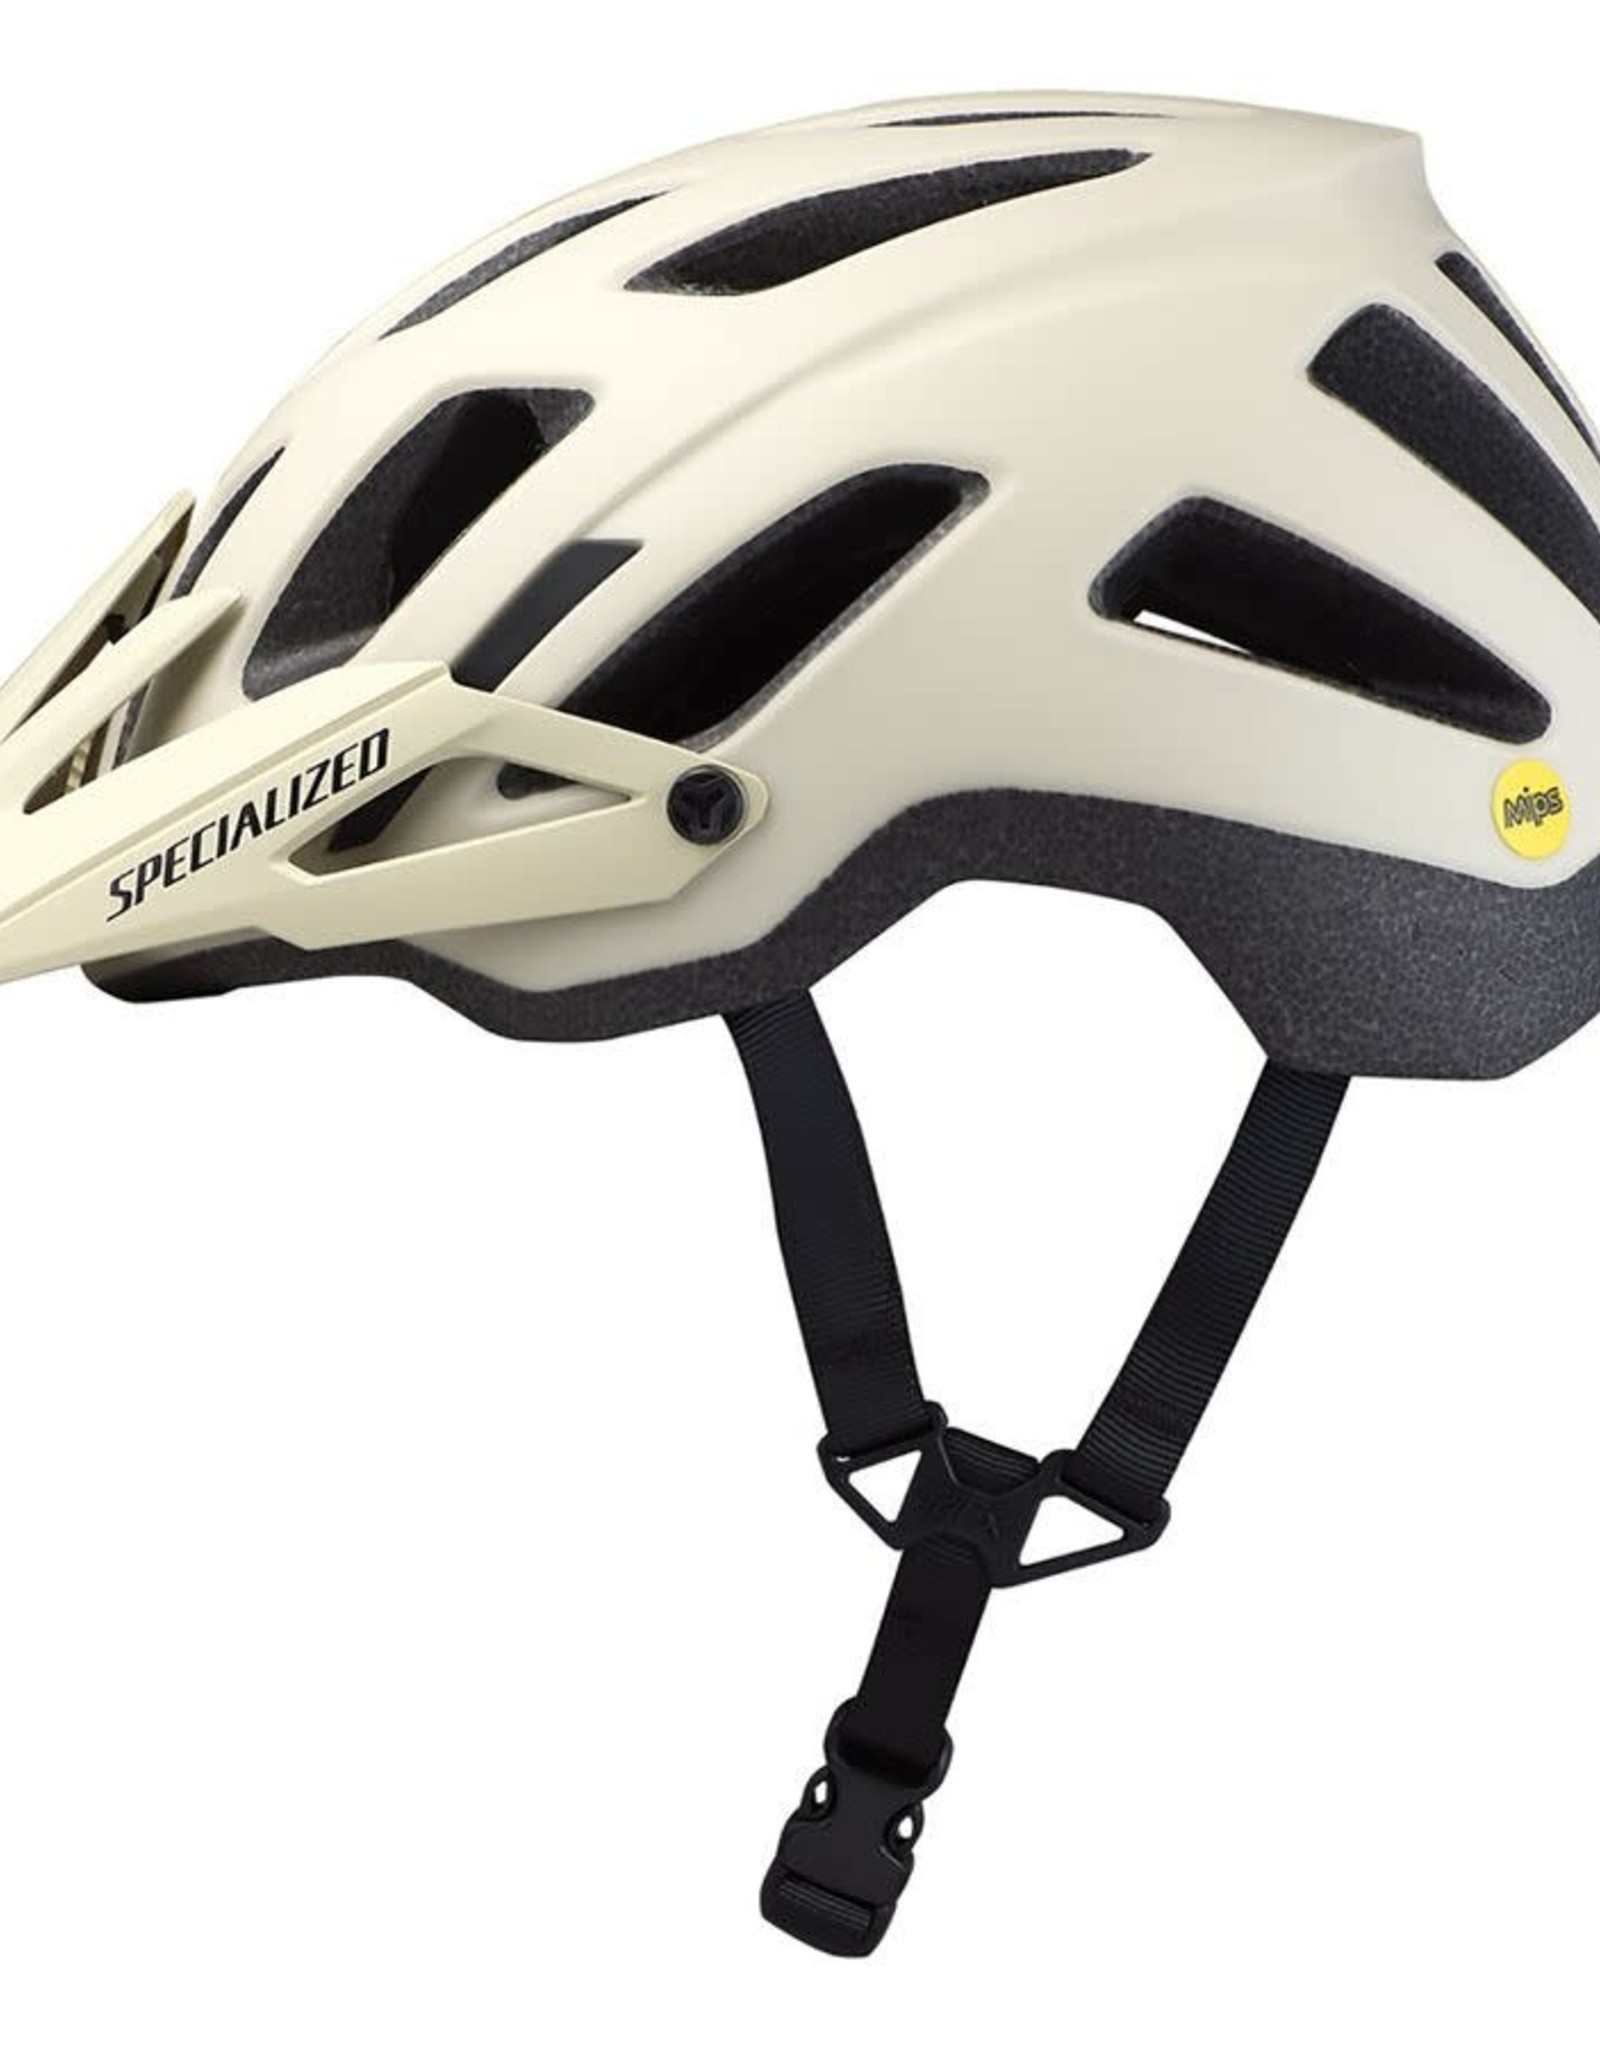 SPECIALIZED SPECIALIZED AMBUSH COMP MIPS Bike Helmet